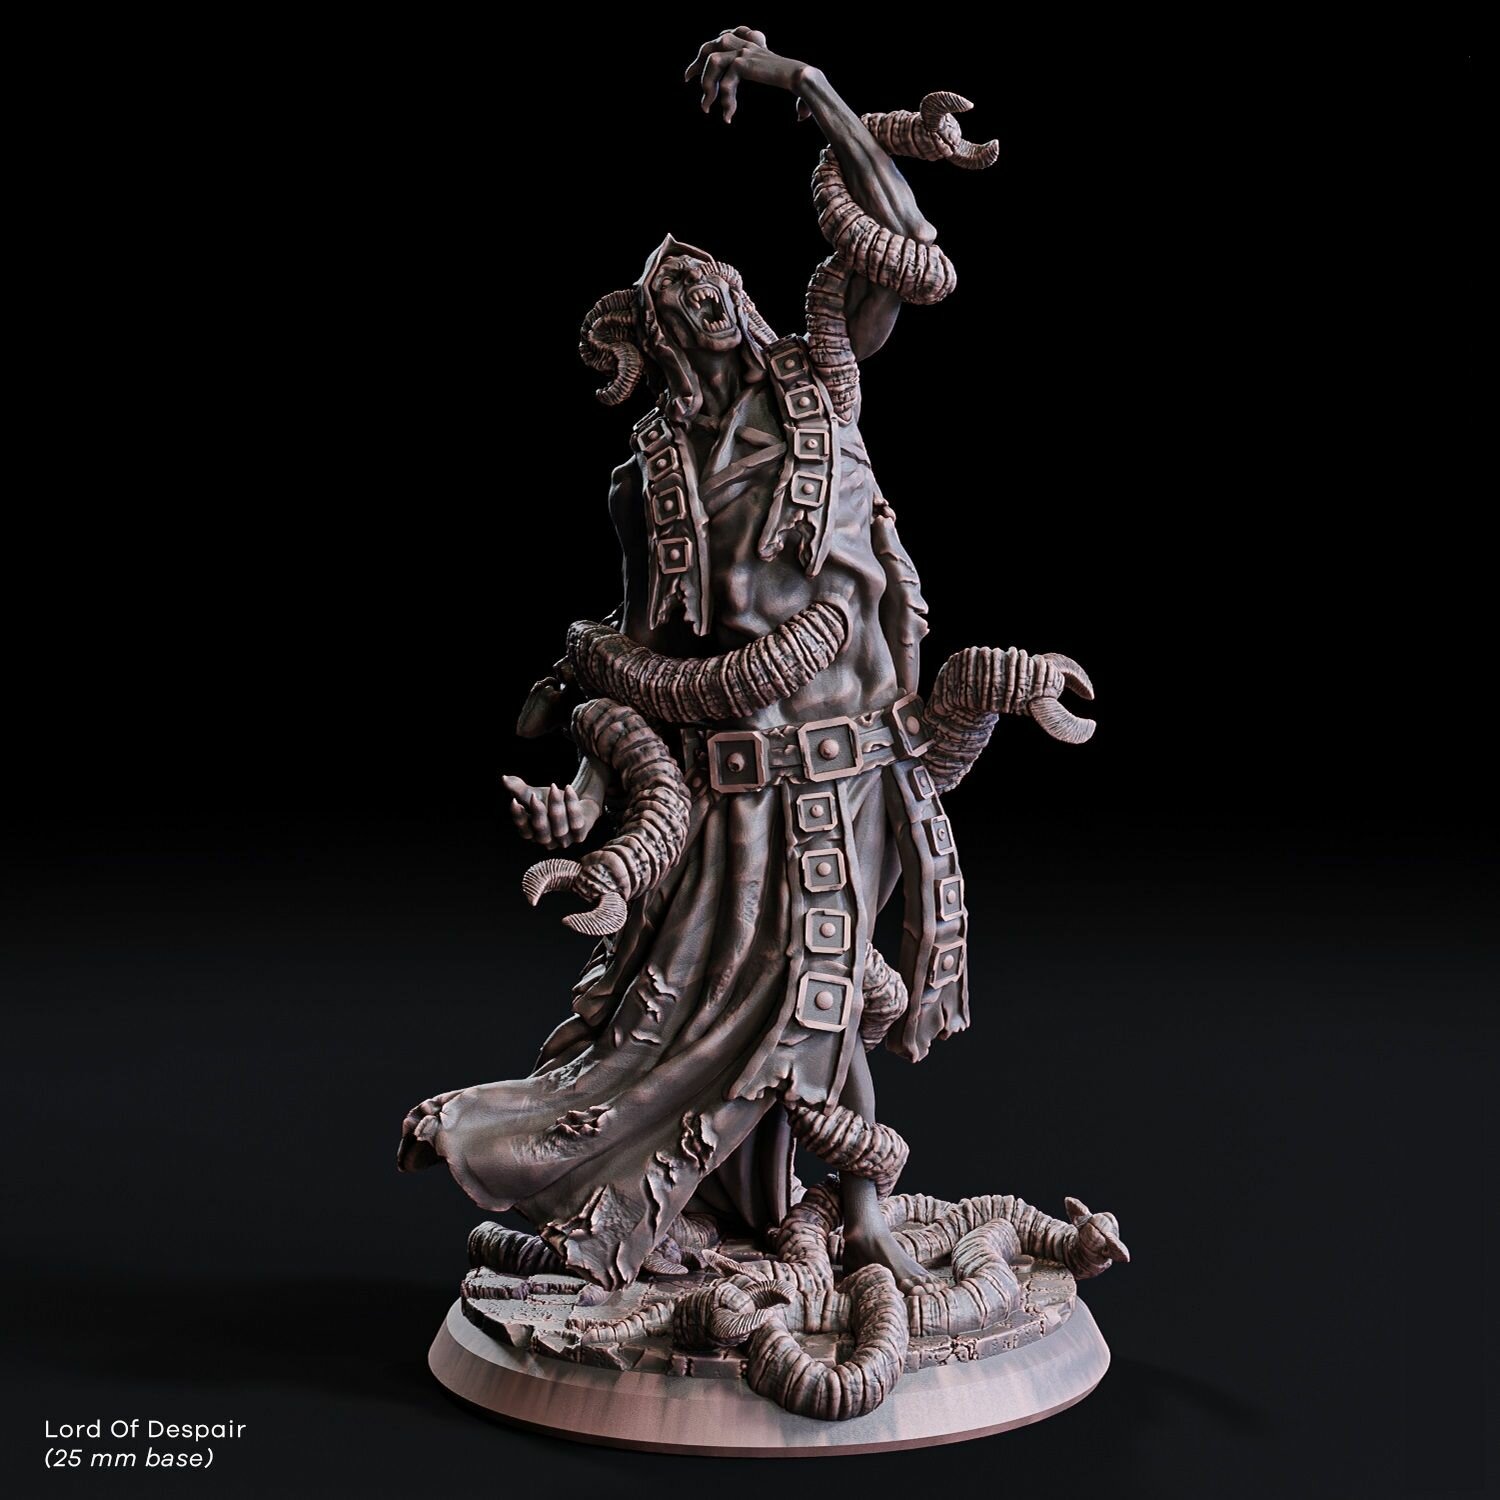 Фэнтези миниатюра повелитель отчаяния (демон) игровая фигурка для раскрашивания, база 25мм